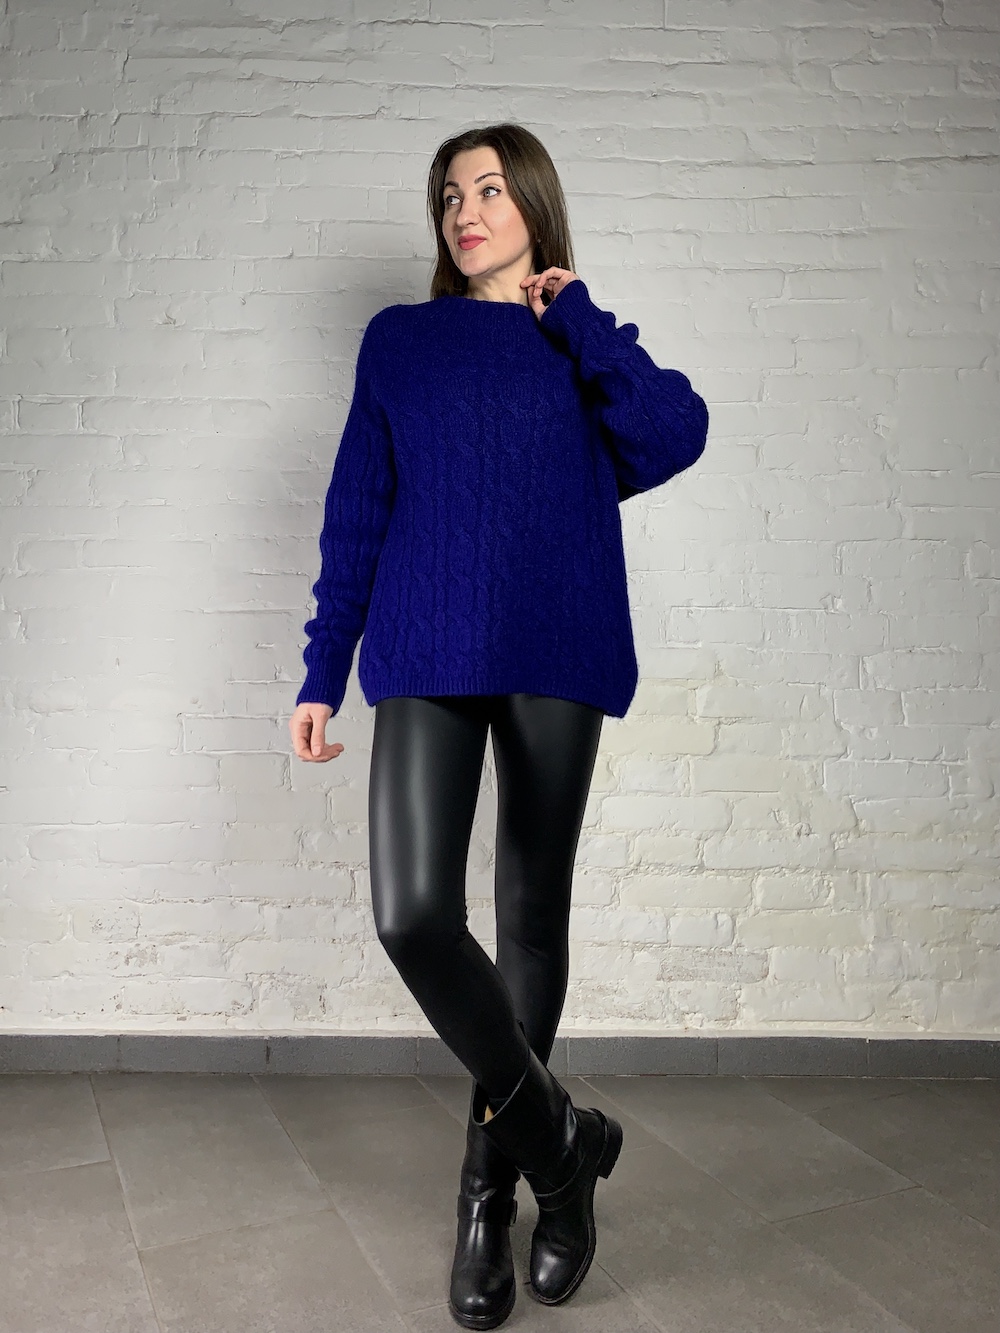 Теплый свитер цвета электрик, итальянского бренда No-Na